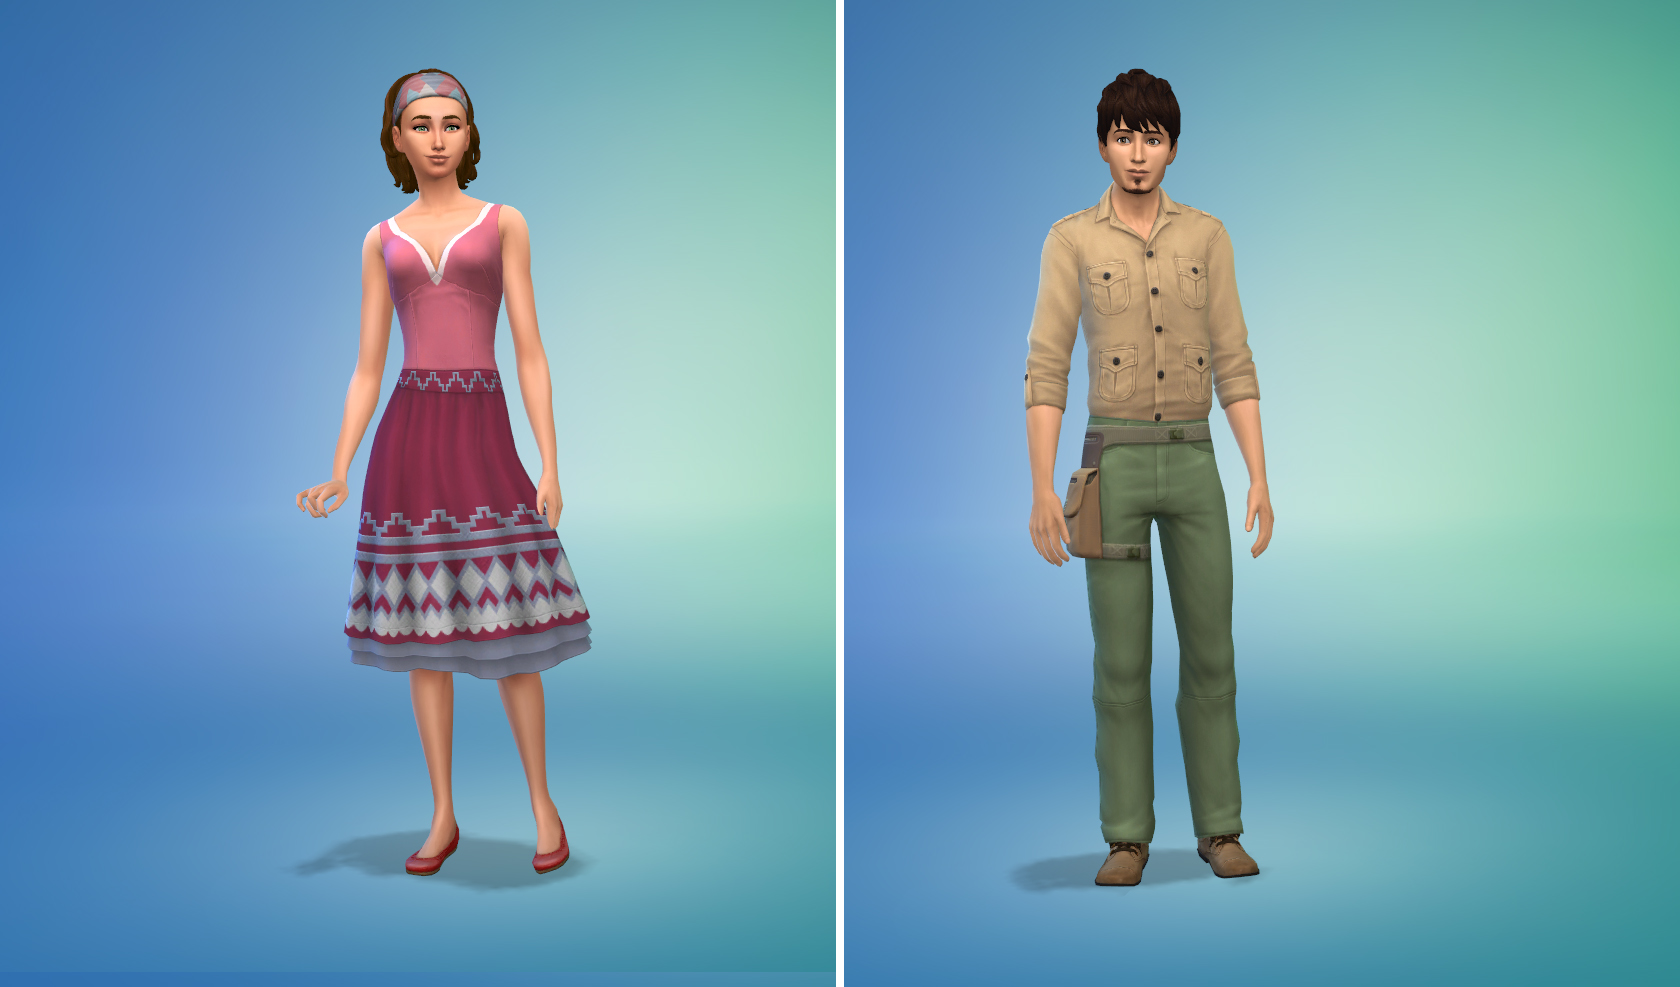 The Sims 4 Avventura nella Giungla